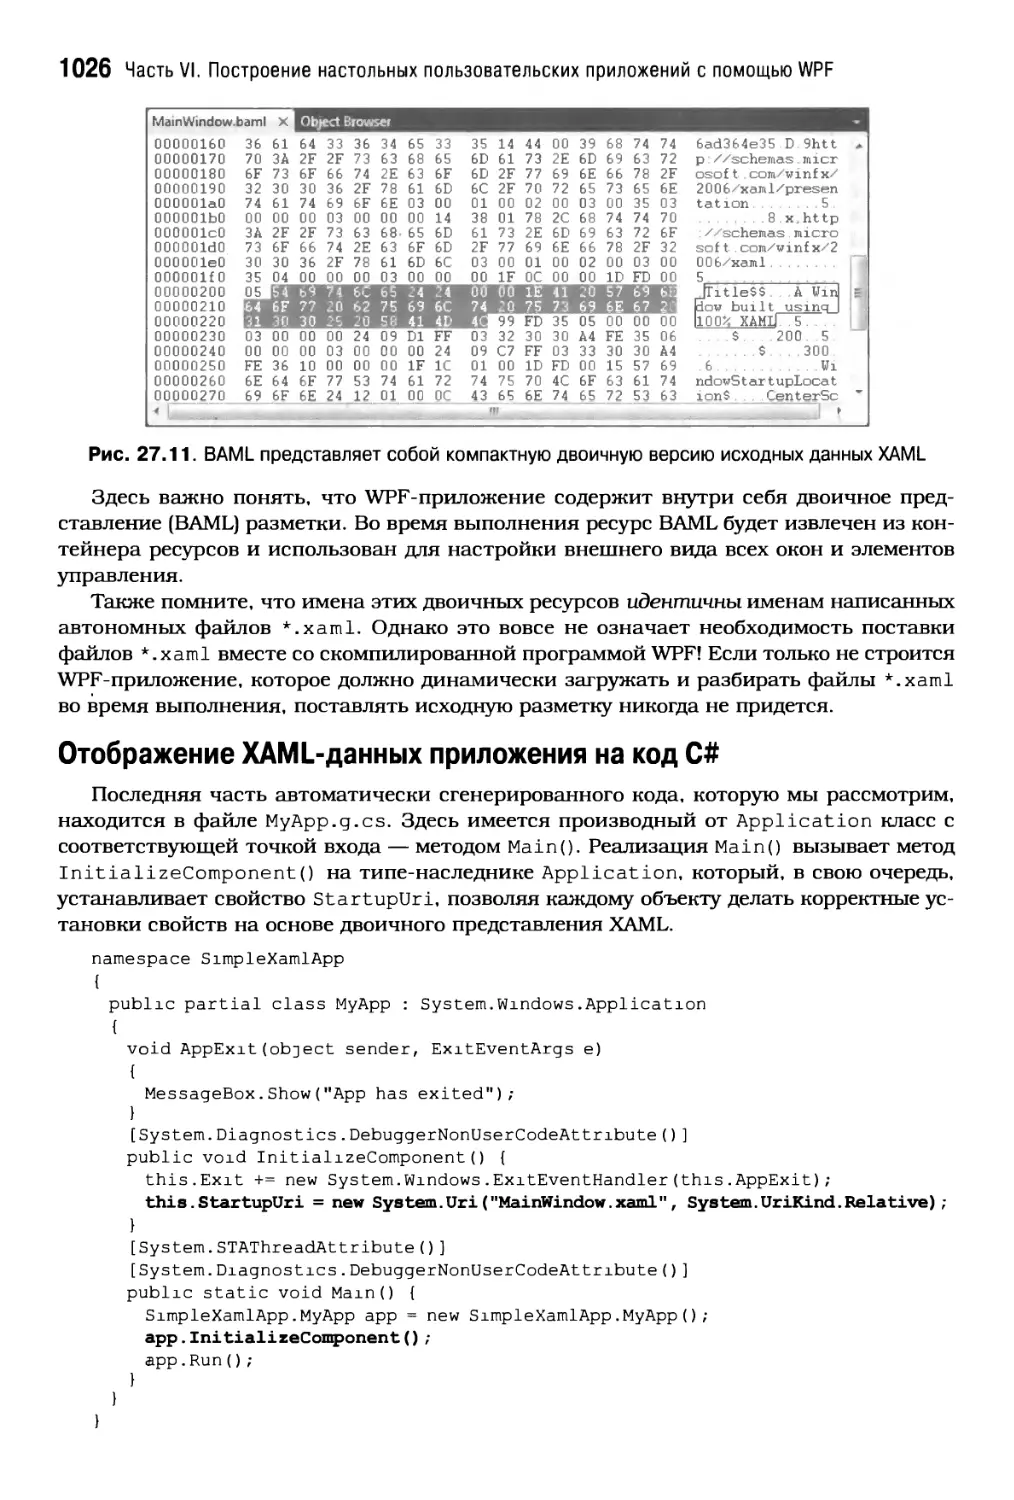 Отображение XAML-данных приложения на код С#